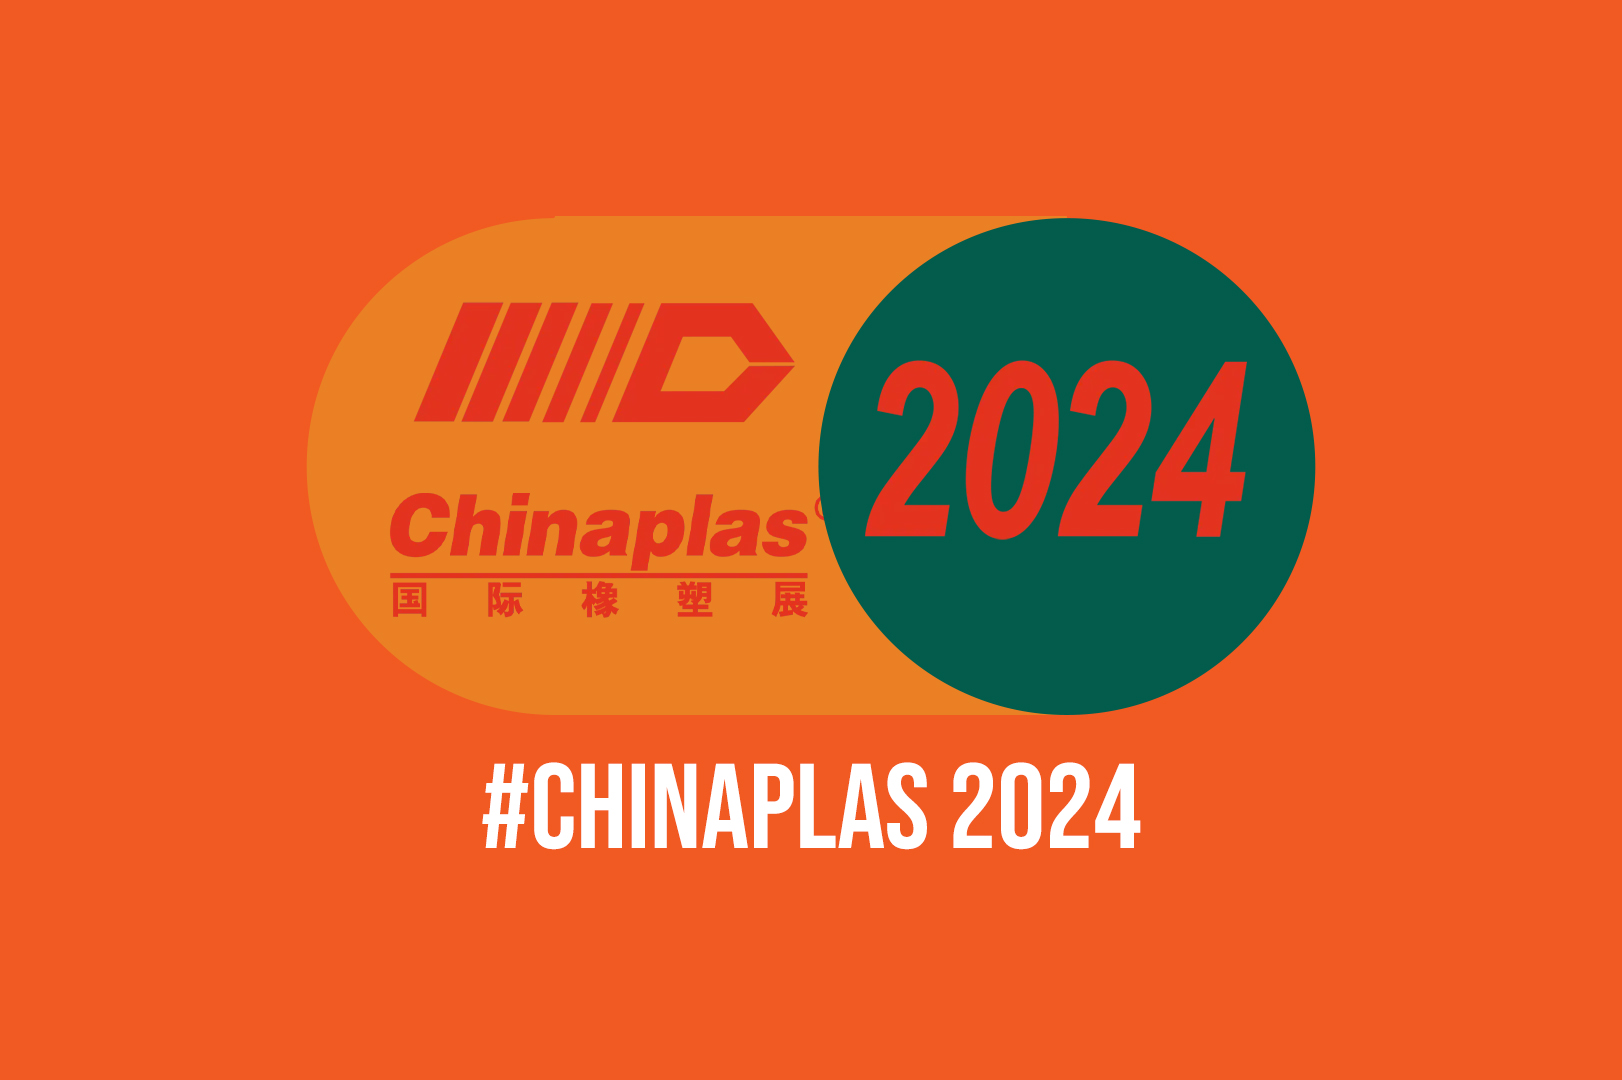 حضور در نمایشگاه چایناپلاس 2024